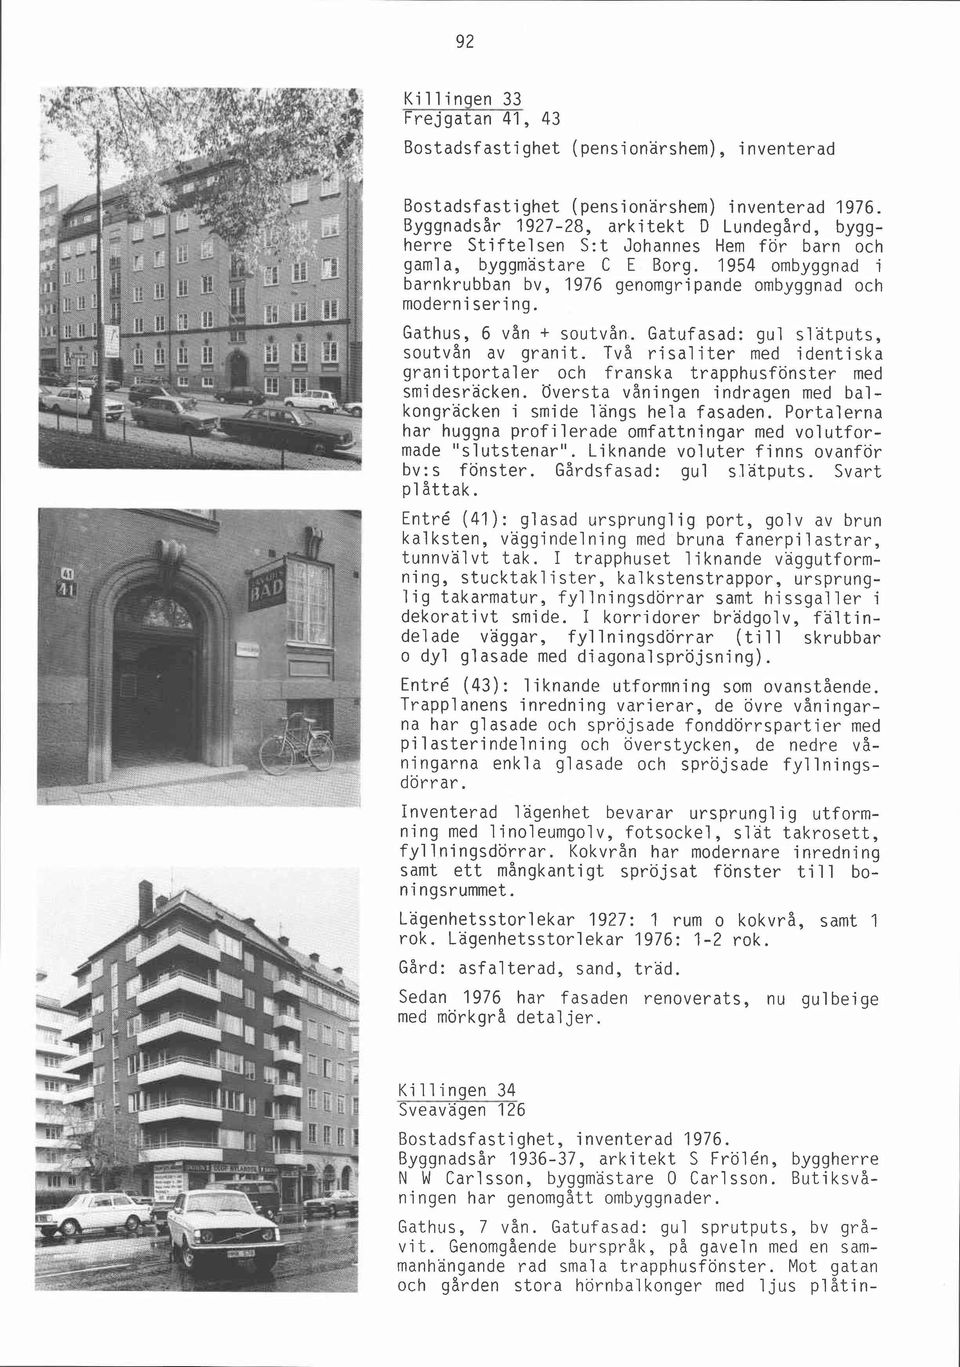 1954 ombyggnad i barnkrubban bv, 1976 genomgripande ombyggnad och modernisering. Gathus, 6 vån + soutvån. Gatufasad: gul slätputs, soutvån av granit.